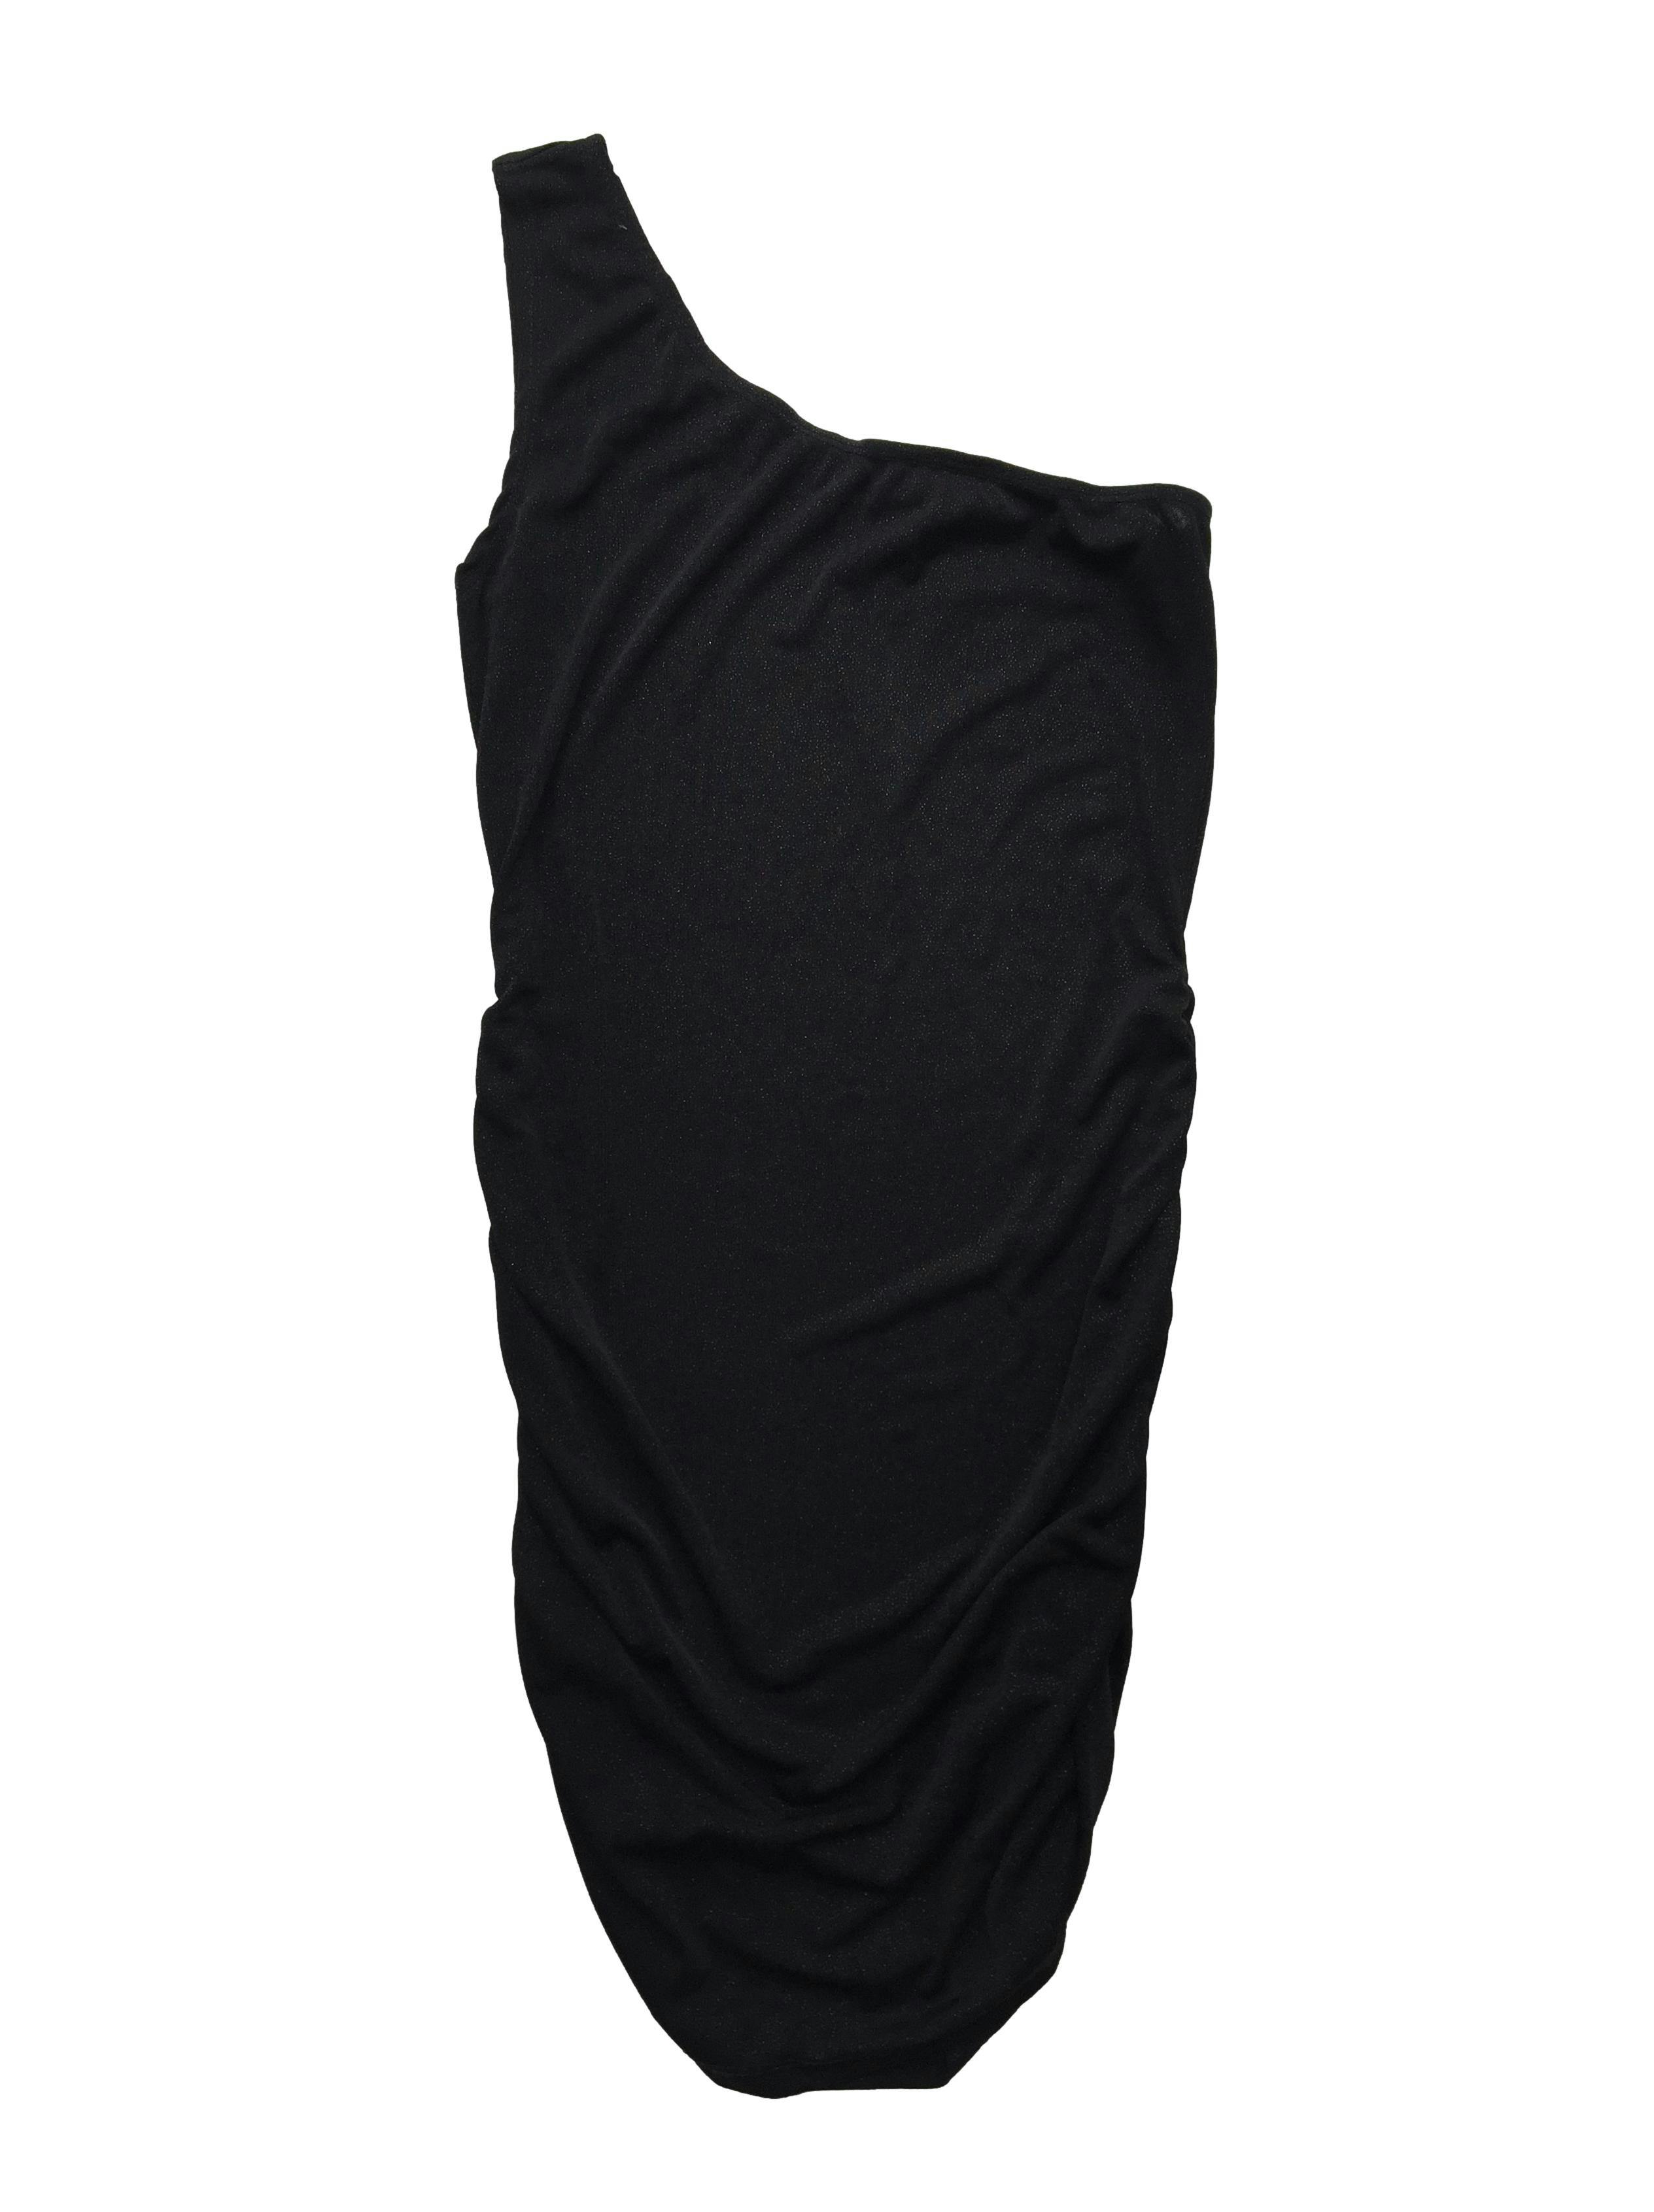 Vestido one shoulder negro escarchado con fruncidos laterales. Busto 85cm sin estirar, Largo 80cm.